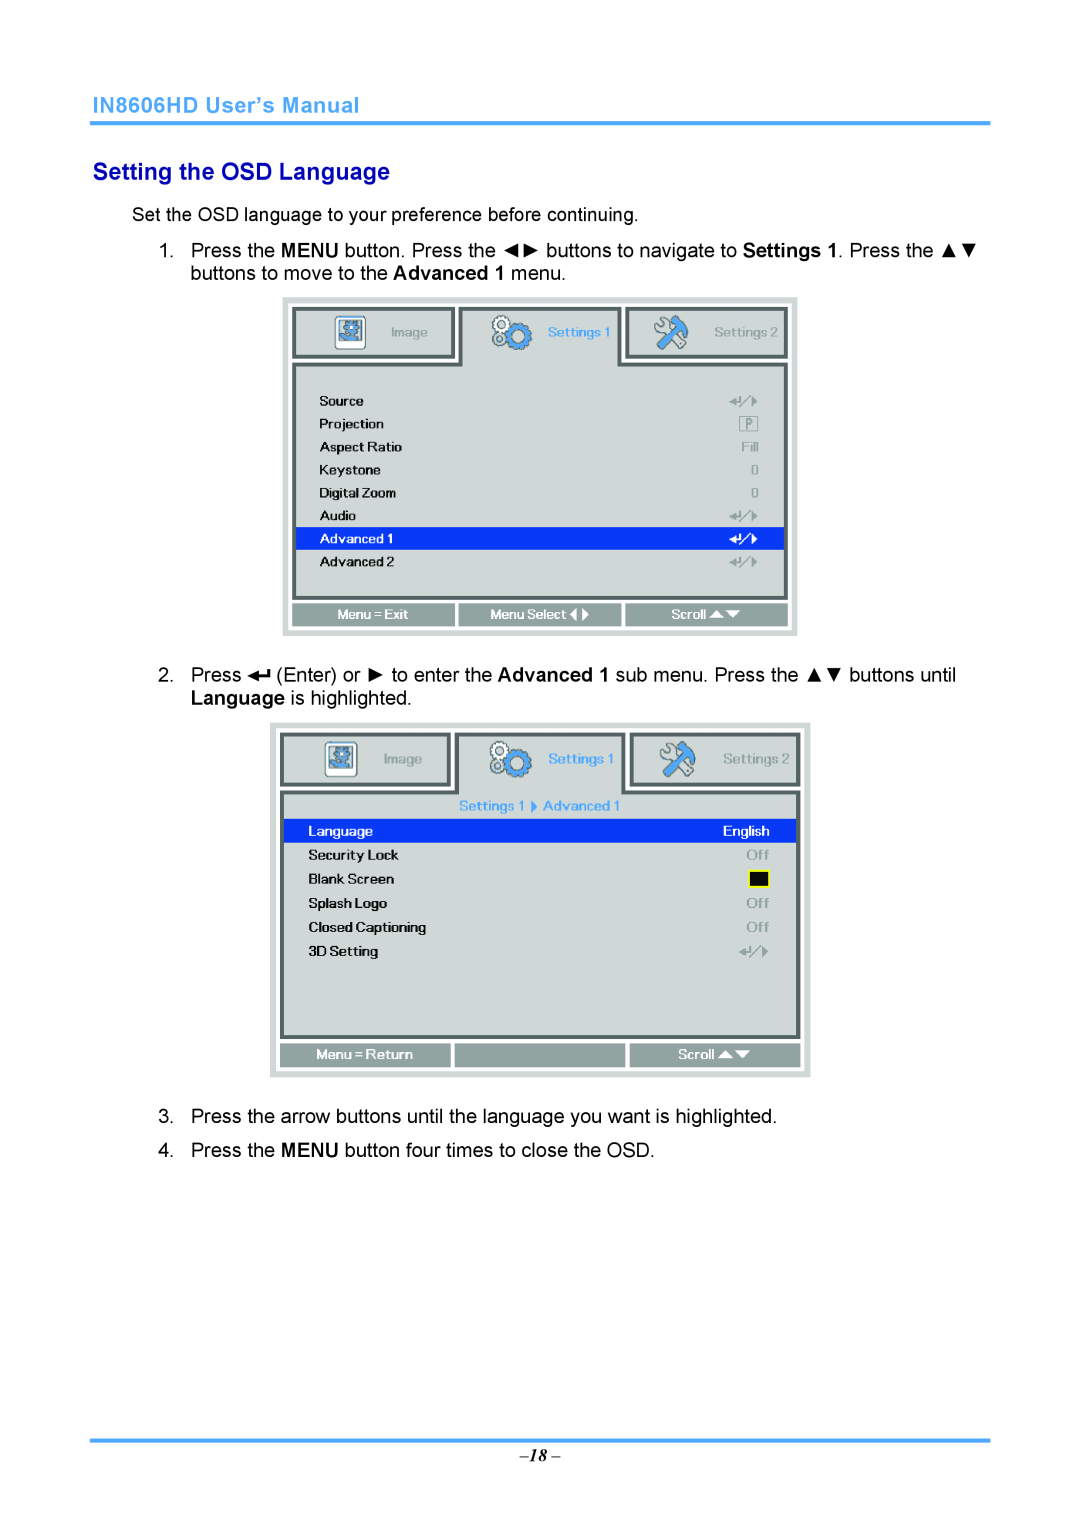 InFocus IN8606HD manual Setting the OSD Language 